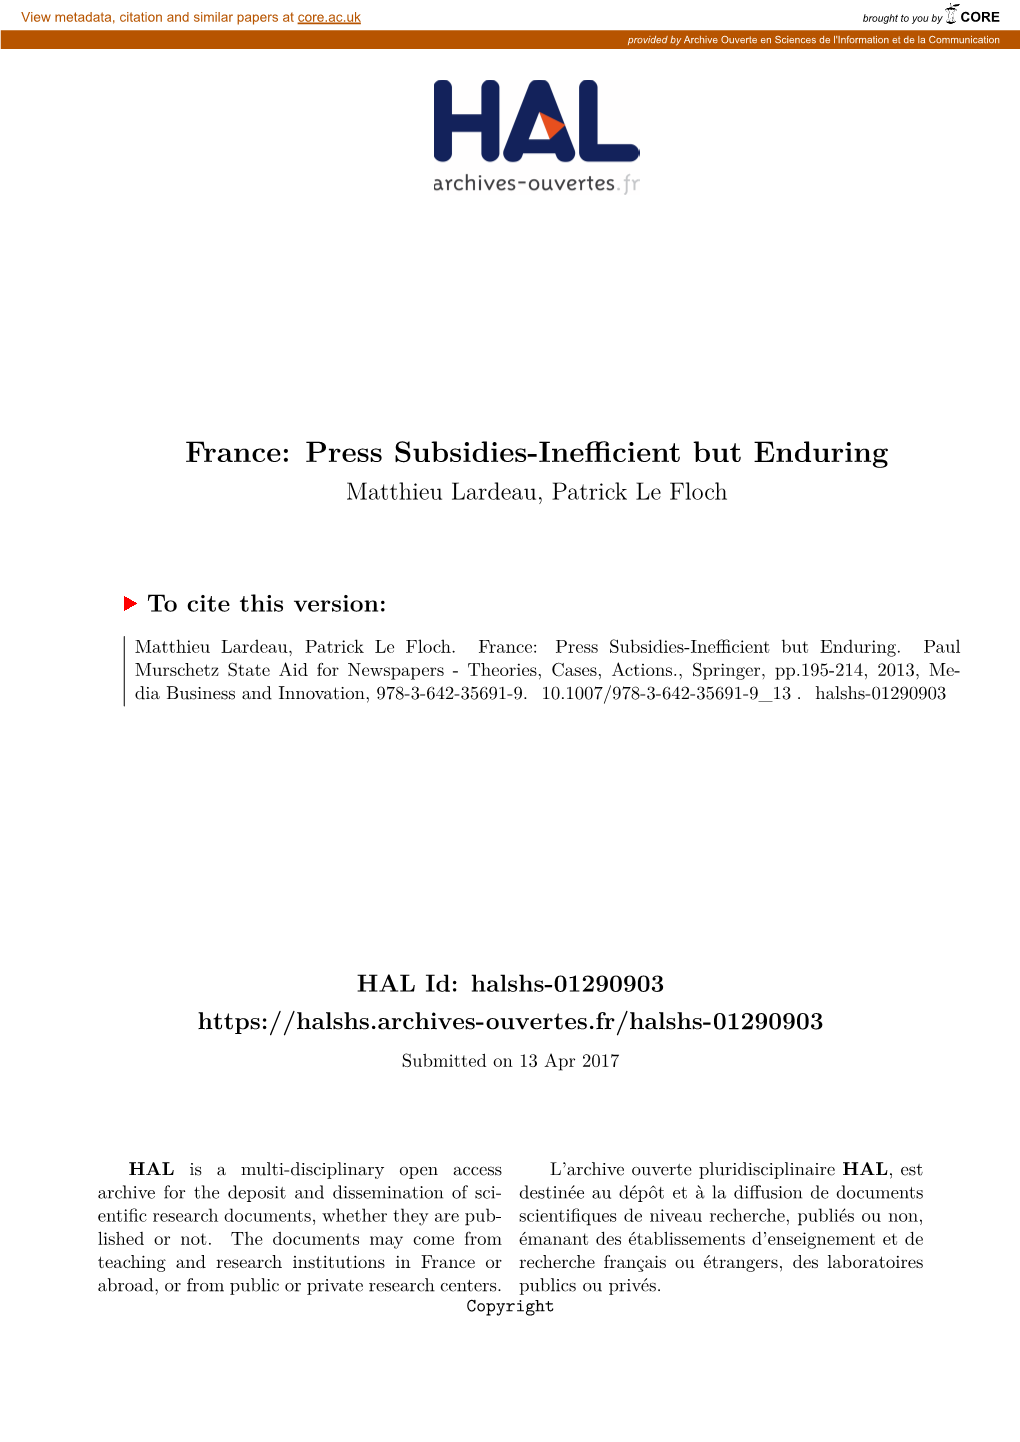 France: Press Subsidies-Inefficient but Enduring Matthieu Lardeau, Patrick Le Floch